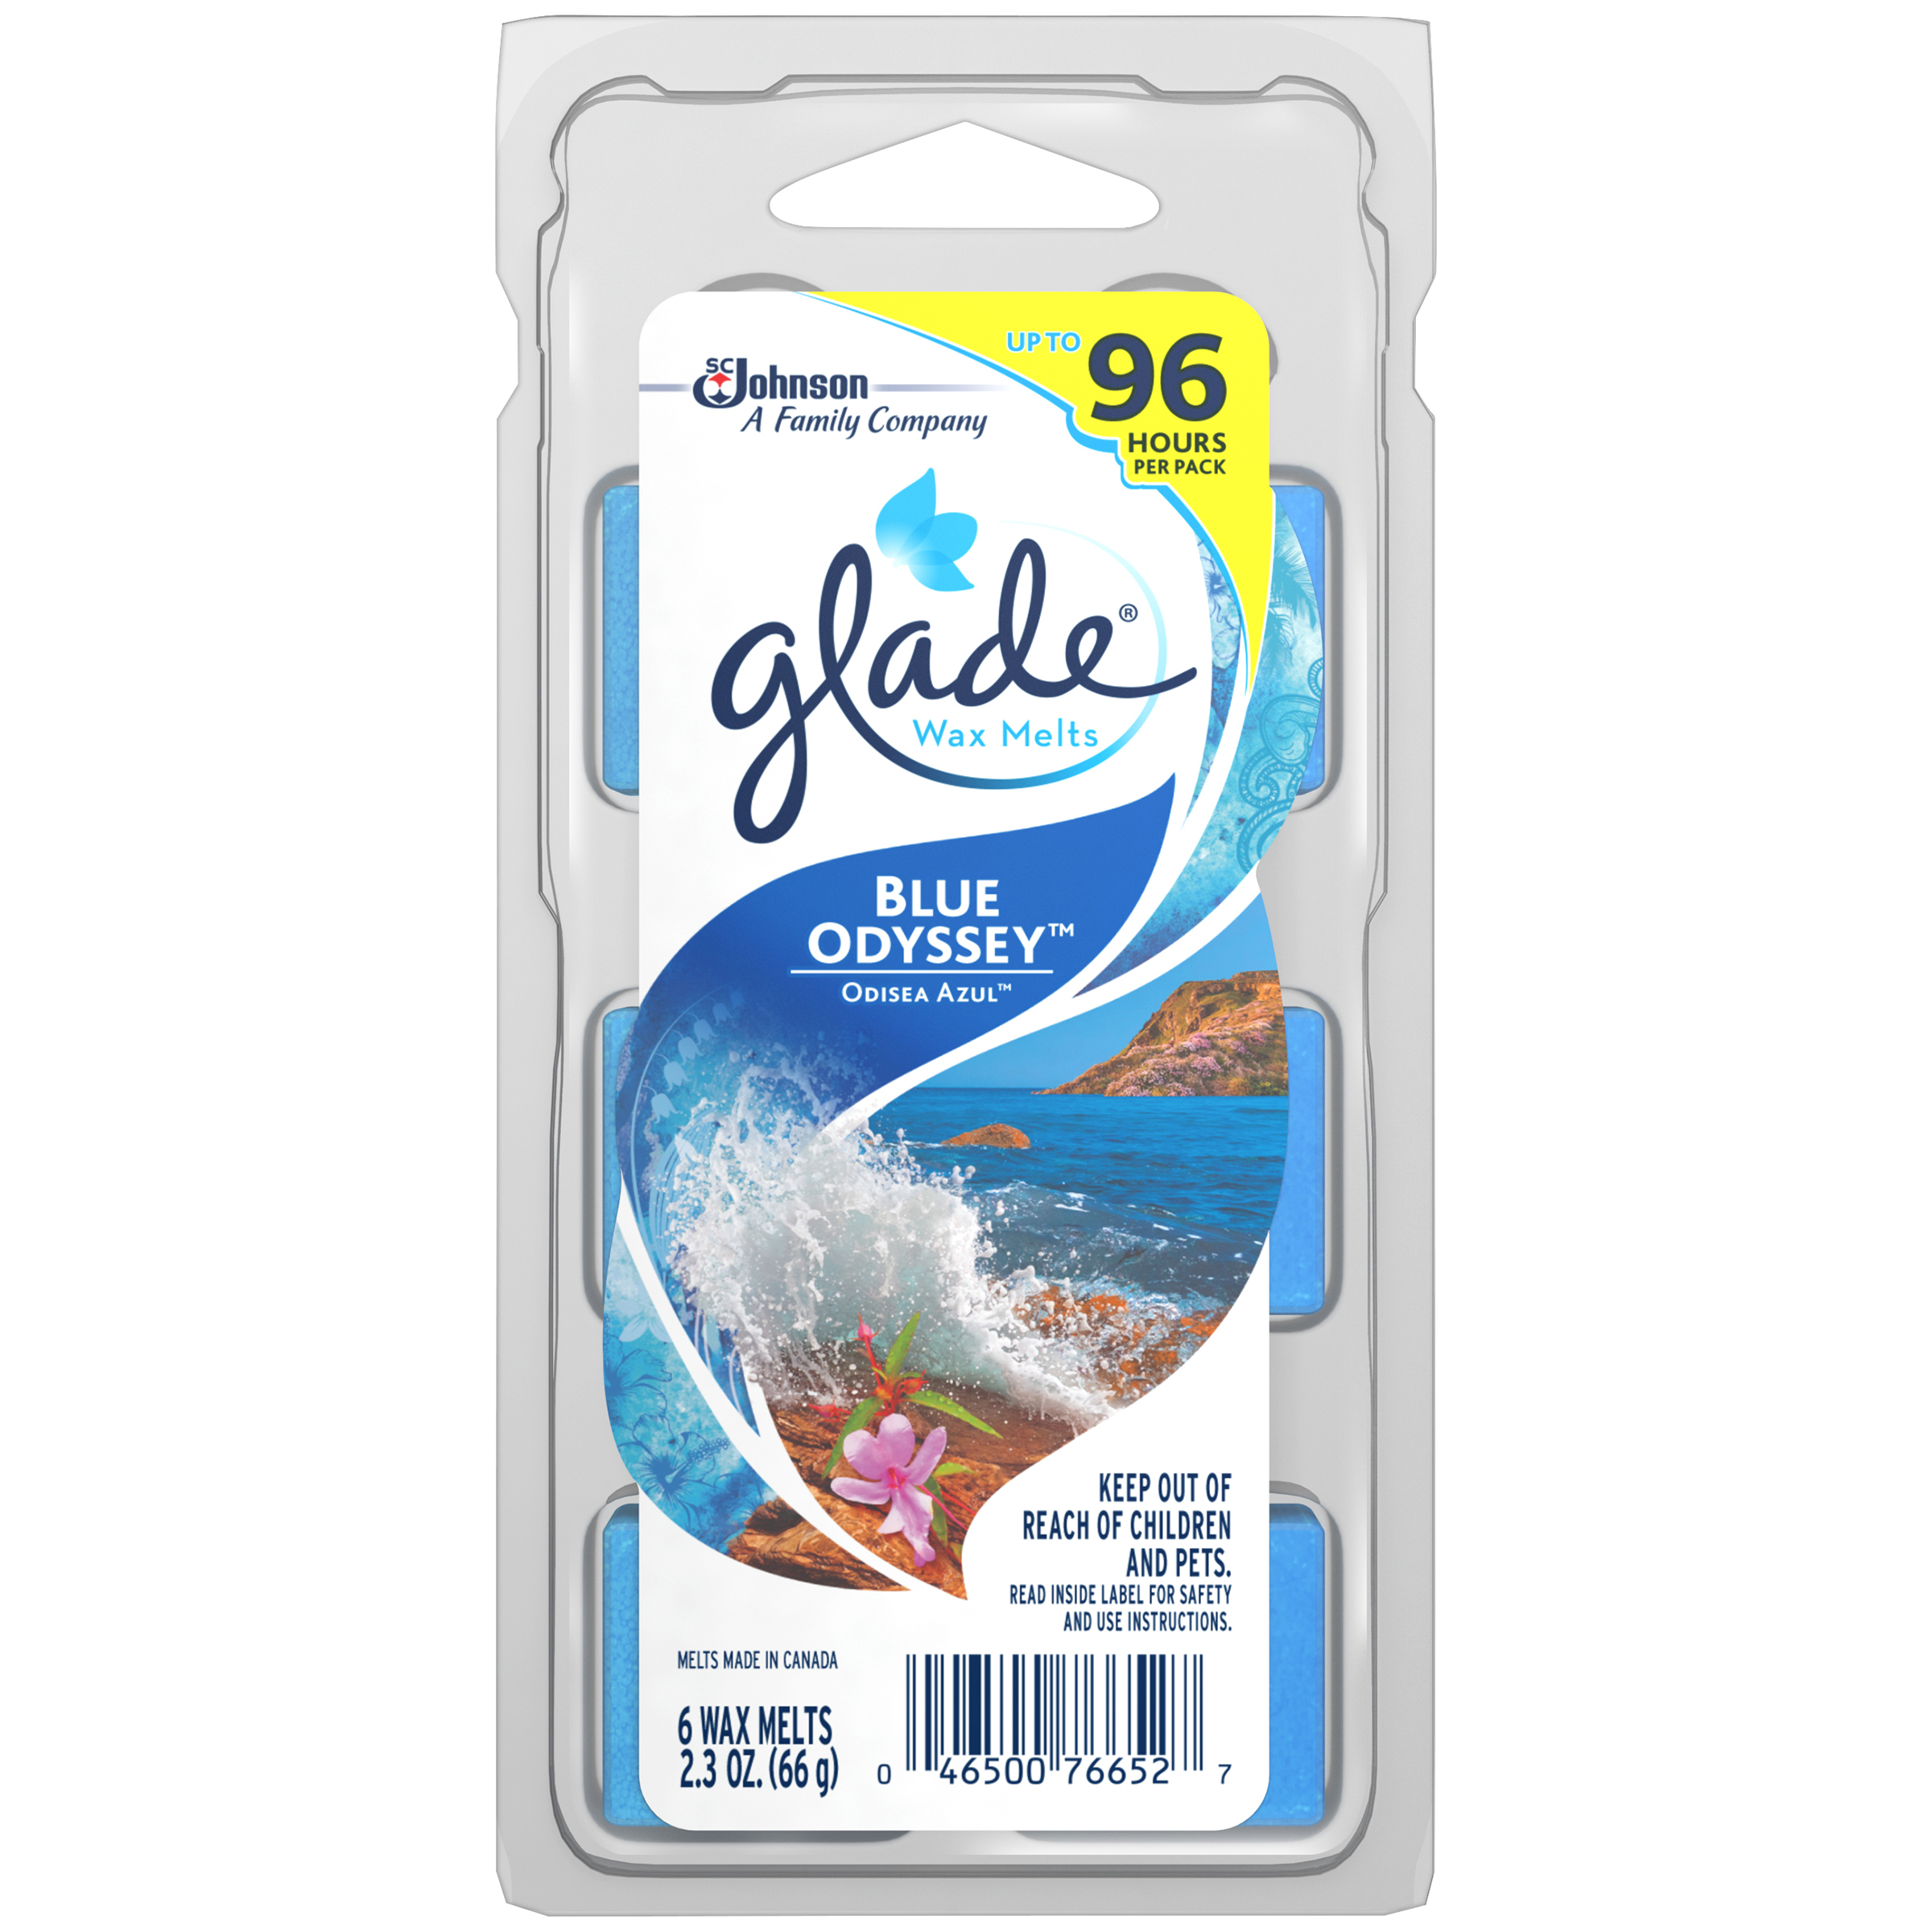 Glade Wax Melts Blue Odyssey Air Freshener Refills 2.3 OZ